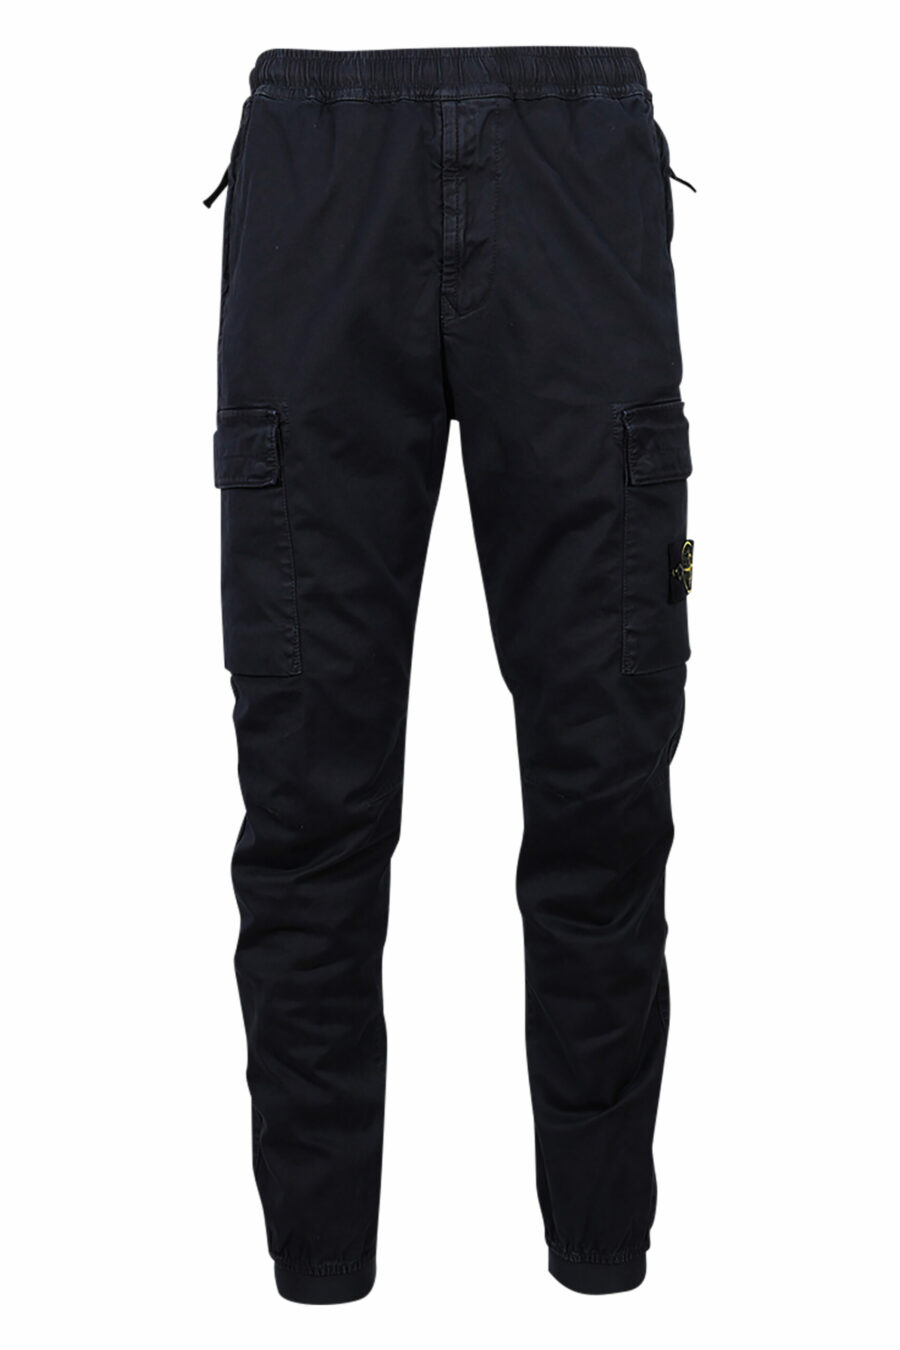 Pantalón azul oscuro con logo lateral parche - 8052572735219 scaled